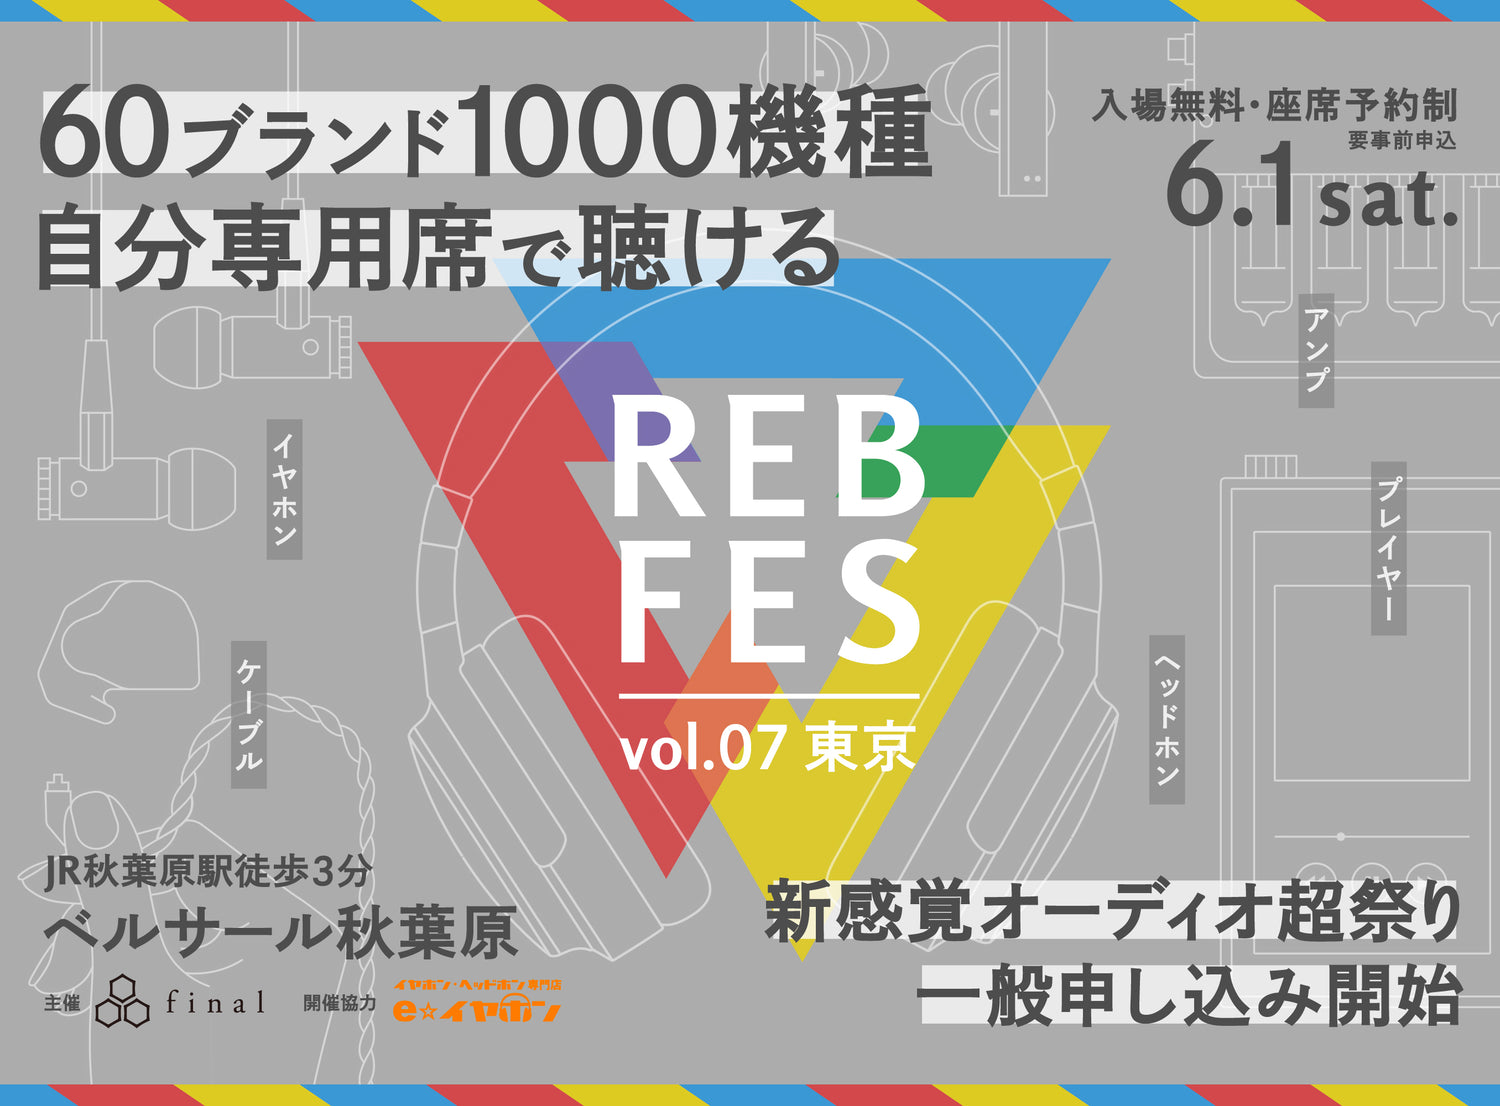 1000機種を超えるオーディオ機器を自分専用席でじっくり試聴できる新イベント<br>「REB fes vol.07@東京」一般枠募集開始